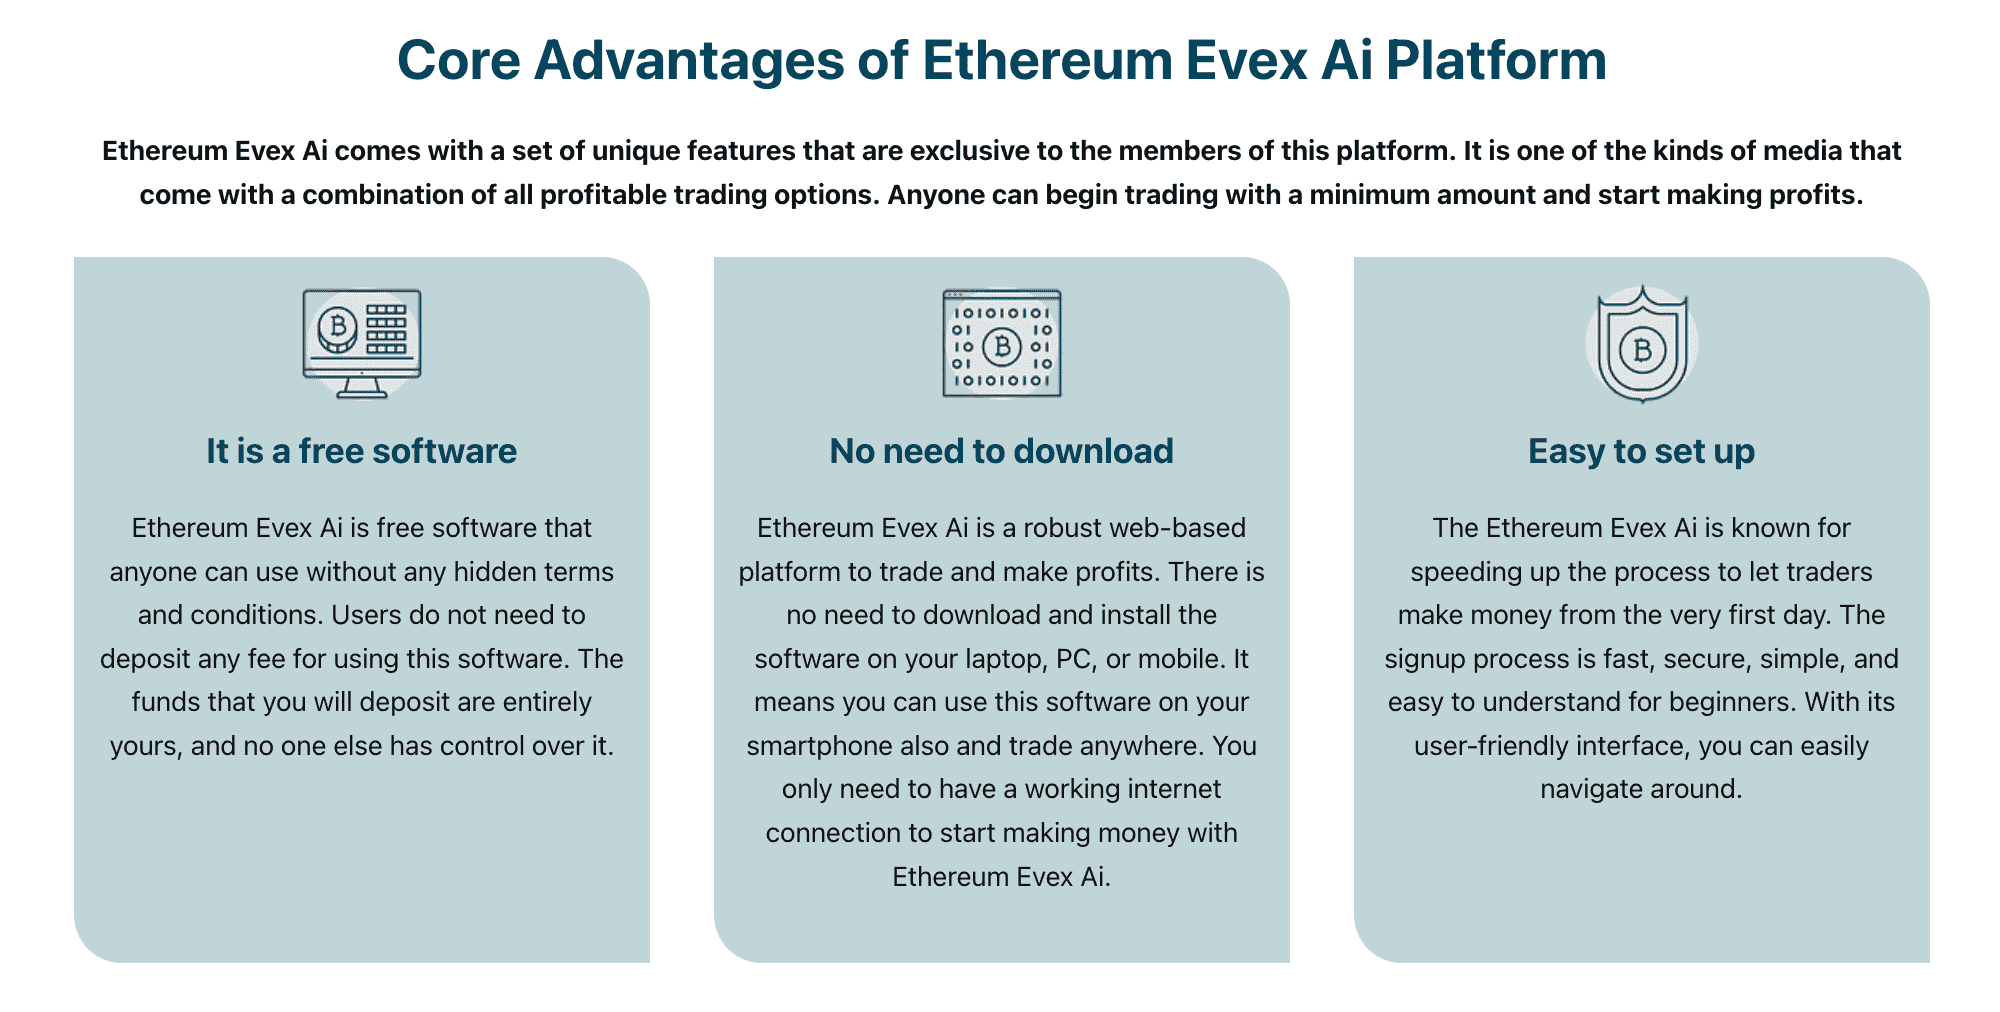 Ethereum Evex Ai Platformunun Temel Avantajları  